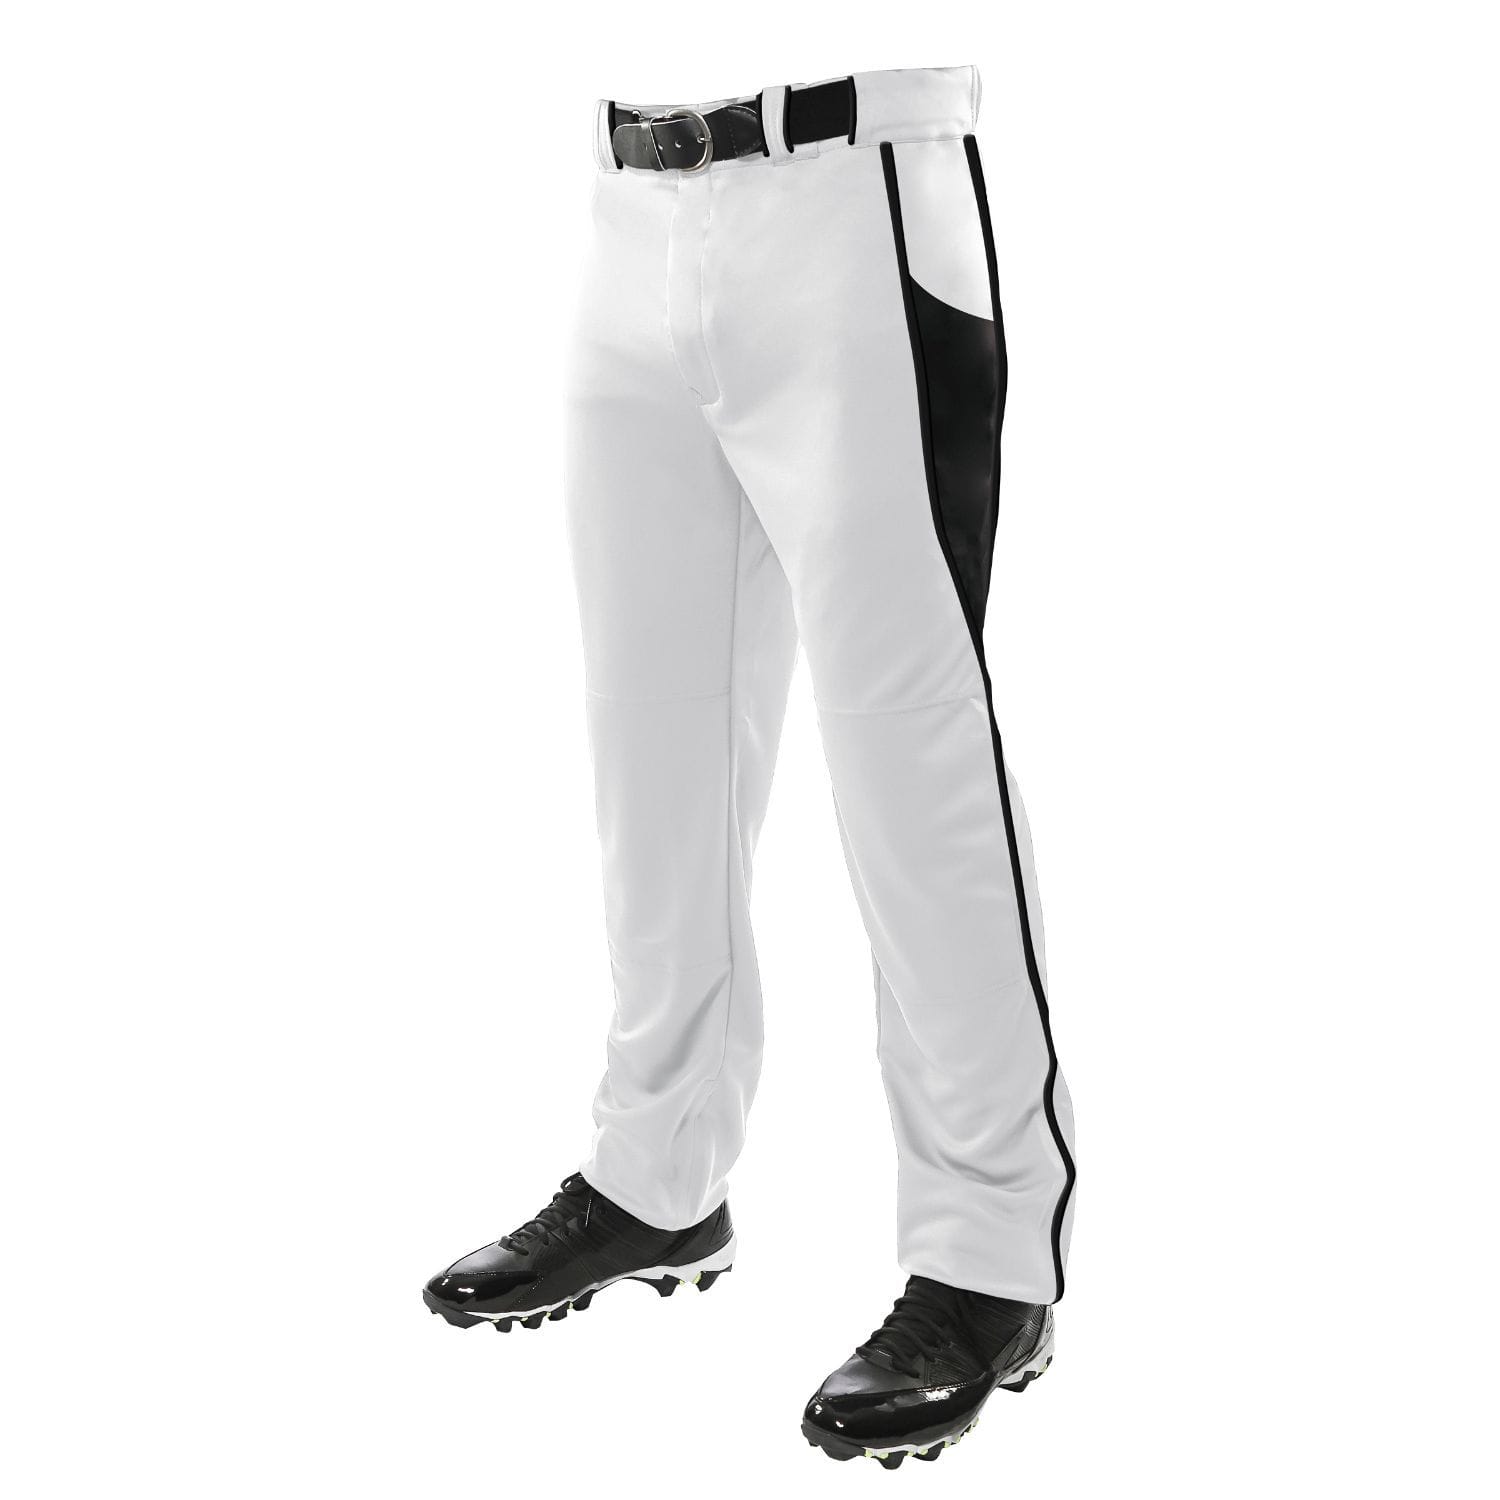 Champro Sports : Baseball Champro Adult Triple Crown Baseball Pant White Black 3XL